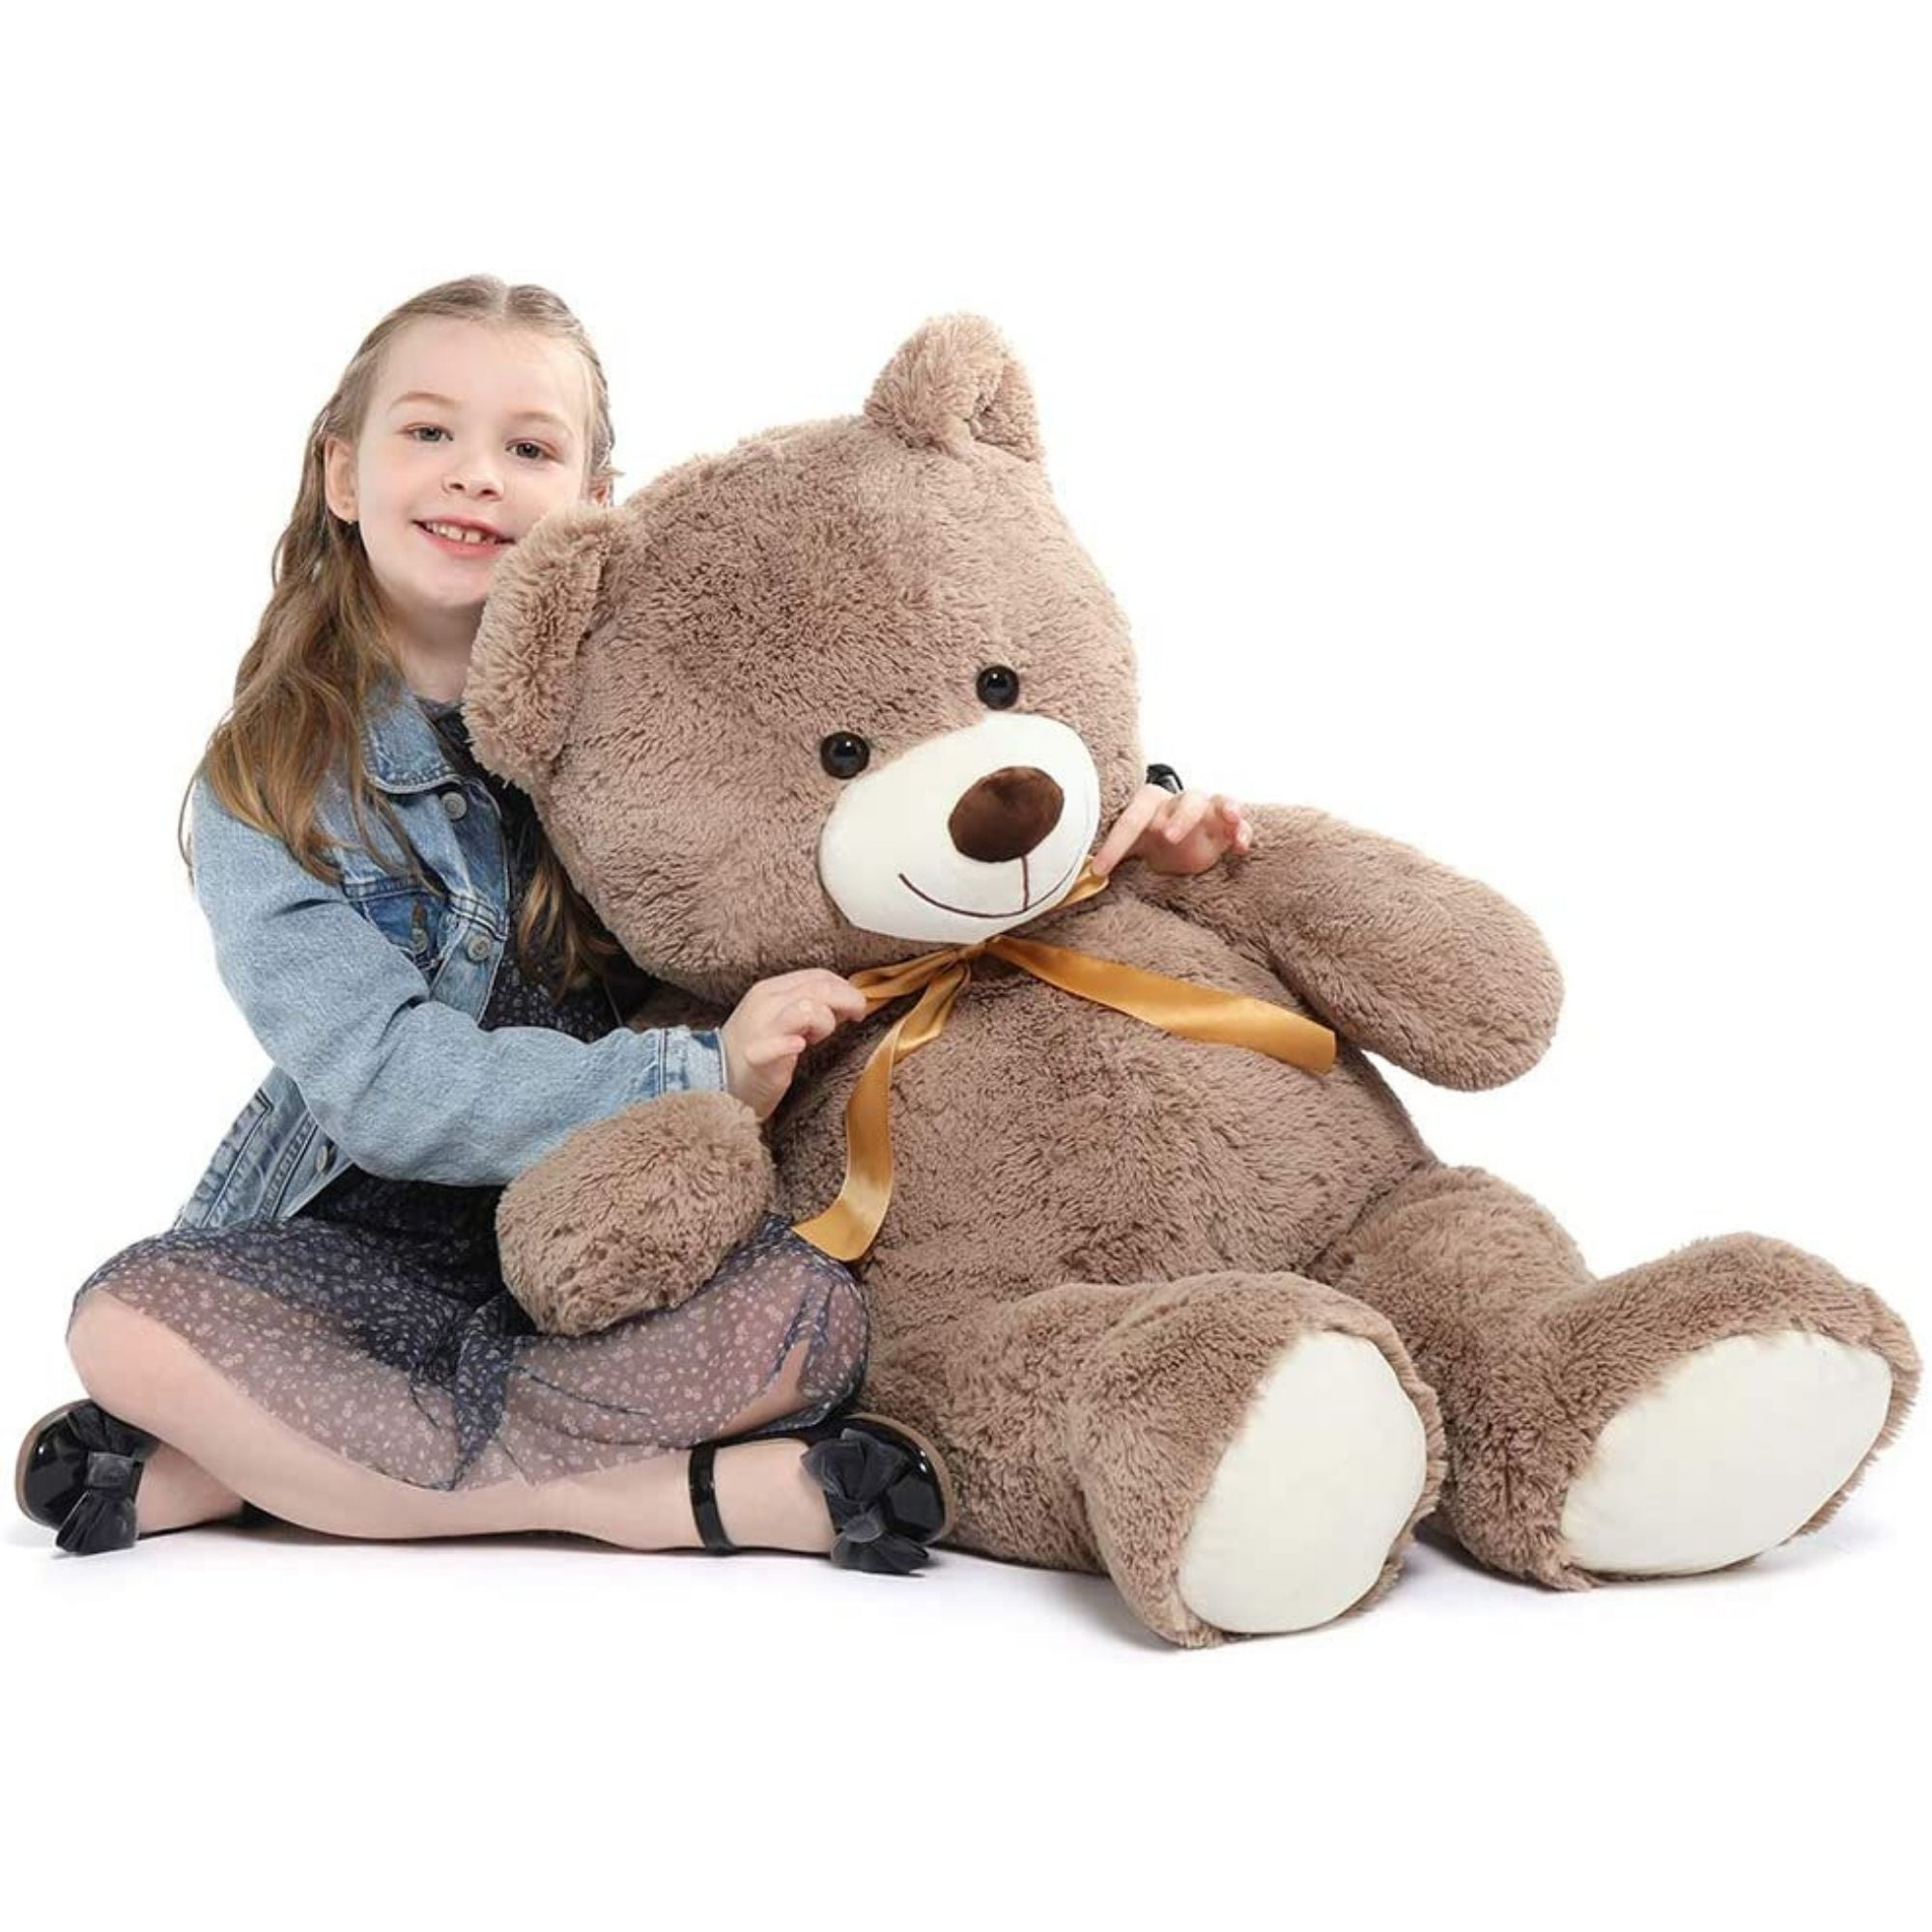 MorisMos Giant Teddy Bear 40'' Stuffed Animal Soft Big Teddy Bear Plush Toy  